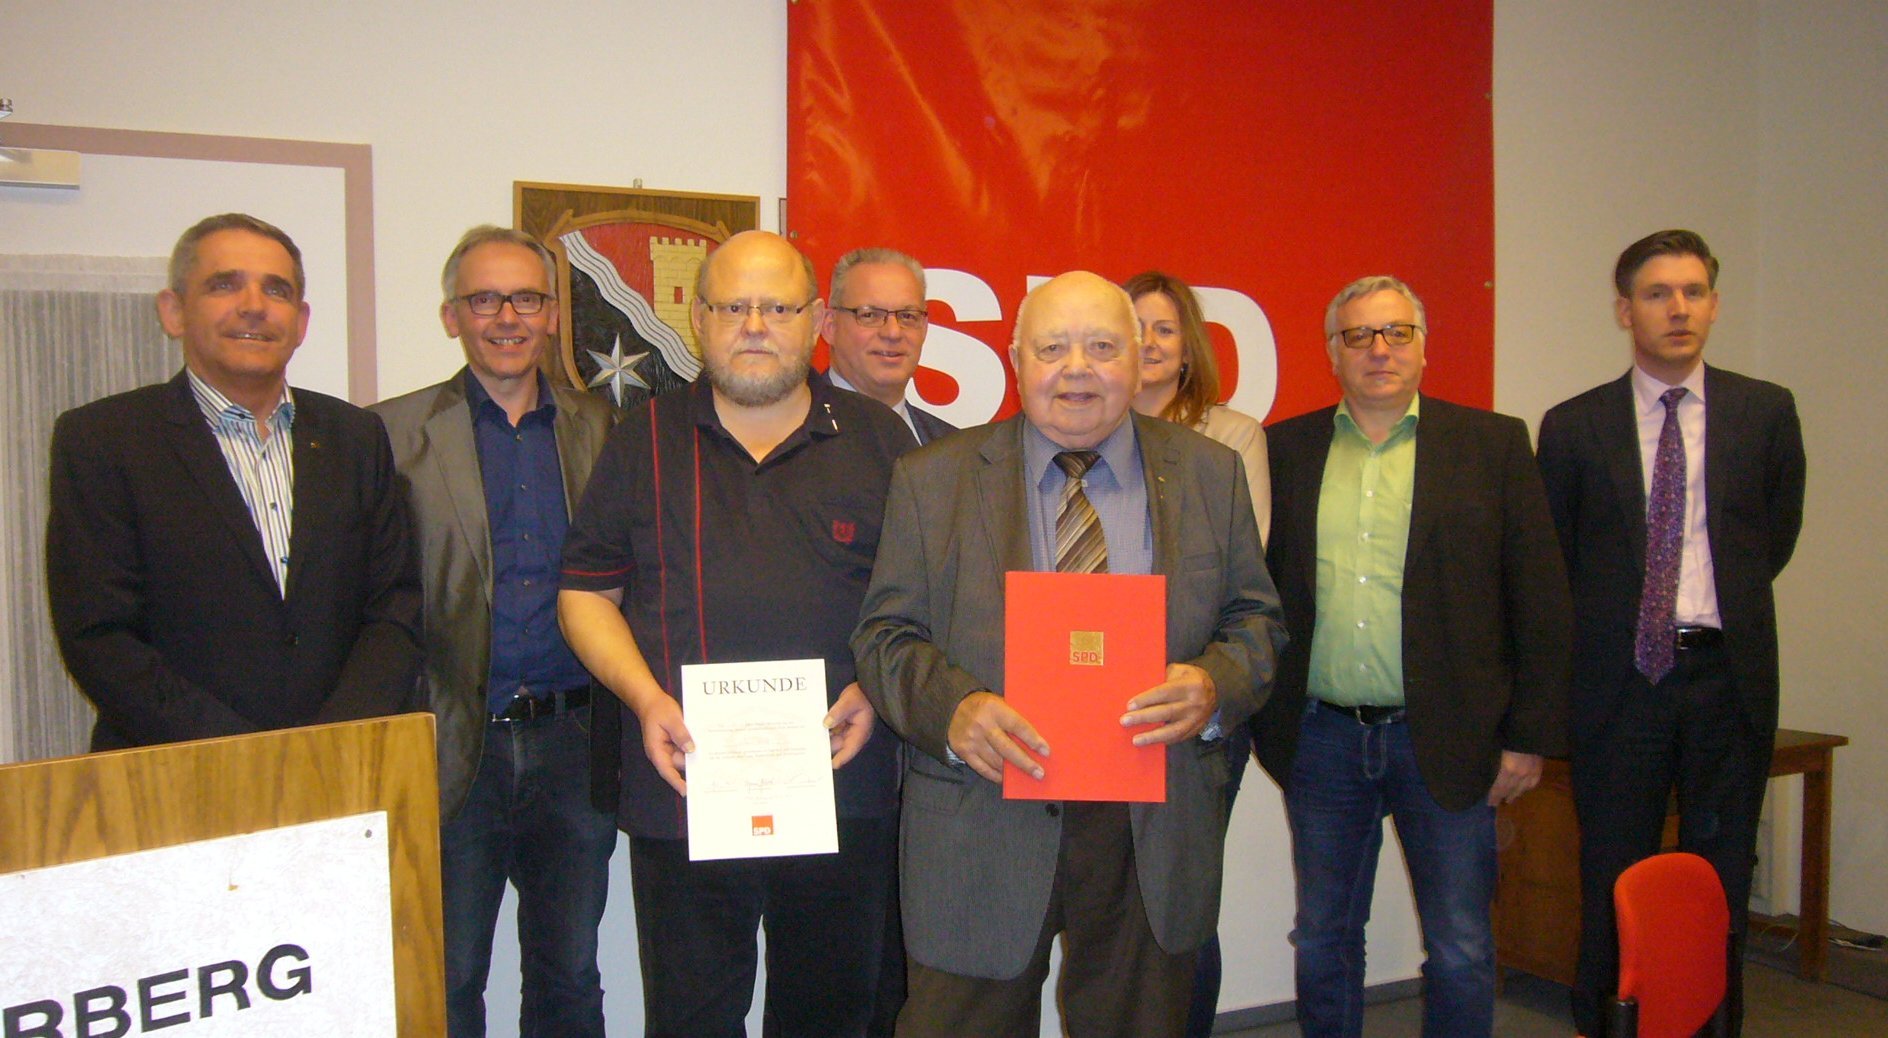 SPD Ehrungen: (v.l.) Lothar Hirth, Martin Dippel, Erhard Ernst, Jürgen Kaufmann, Hermann Waldmann, Anja Widera, Lothar Dietrich und Björn Spanknebel.